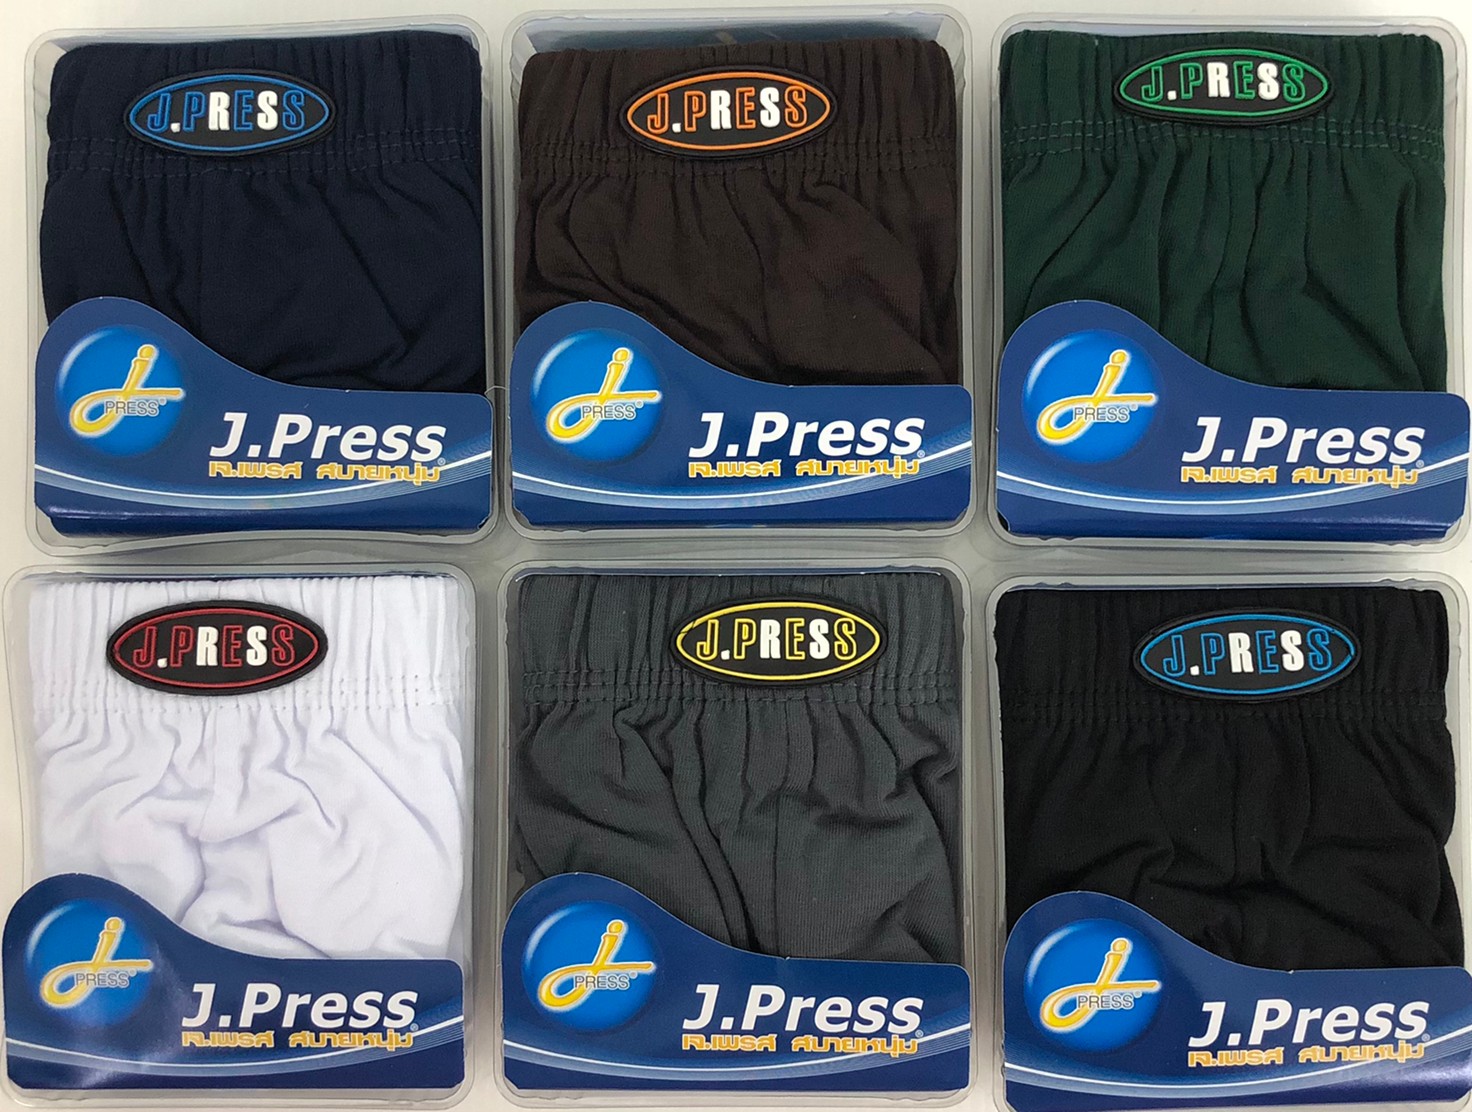 กางเกงในชาย J.Press ขอบผ้า (3 ตัว) รุ่นยอดนิยม 12 สีให้เลือก J Press เจเพรส รุ่น 1444 กางเกงใน ชาย